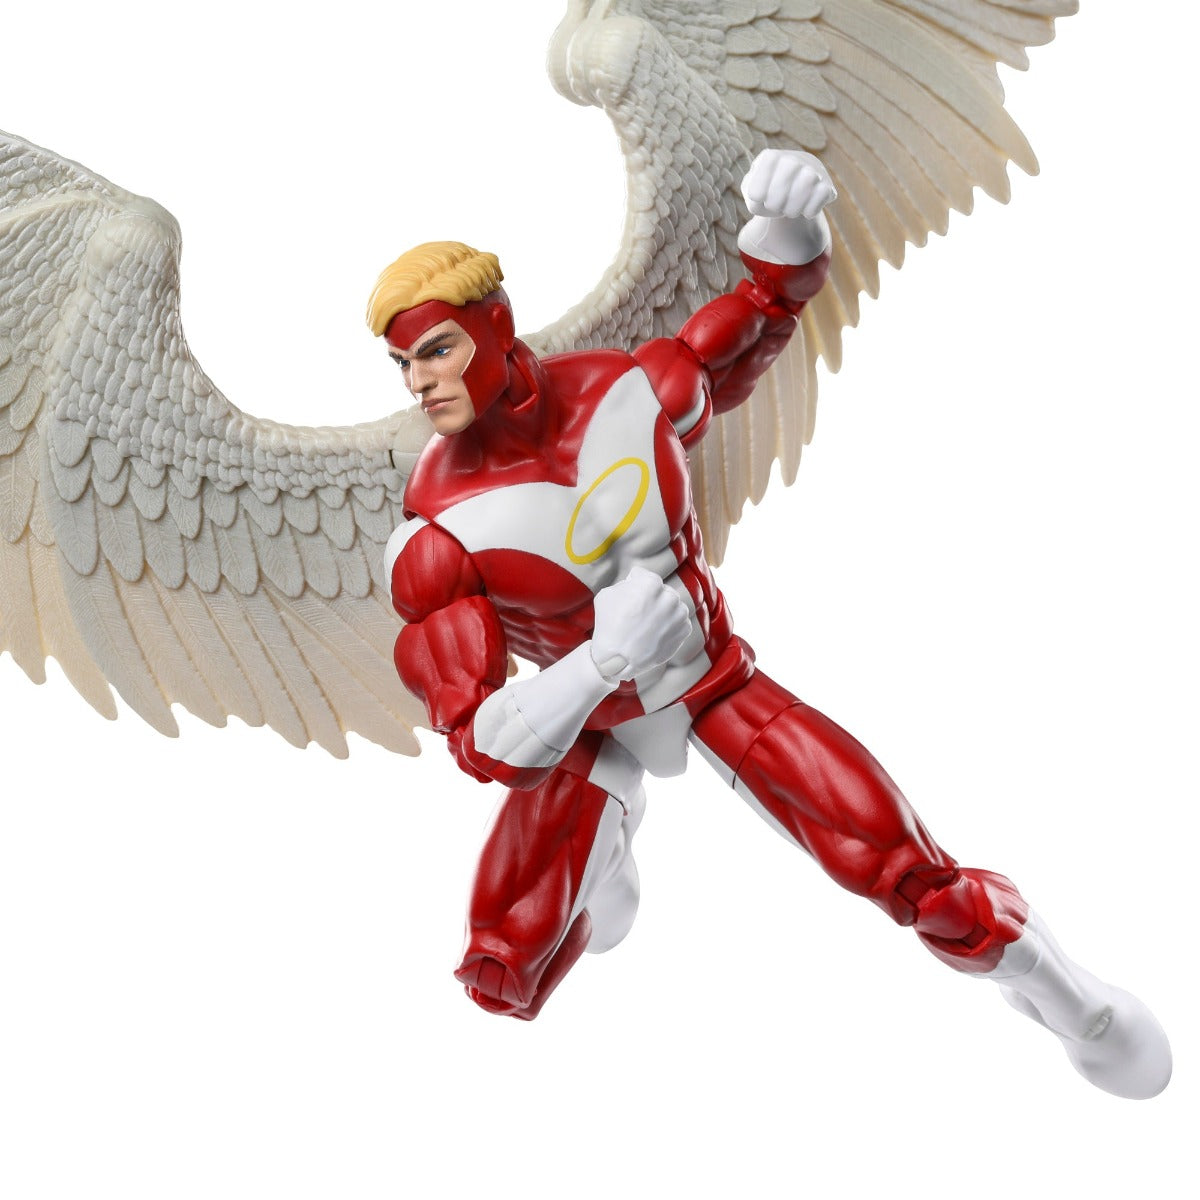 Marvel Legends Series Marvel's Angel, Deluxe X-Men Comics Collectible 6-Inch Action Figure